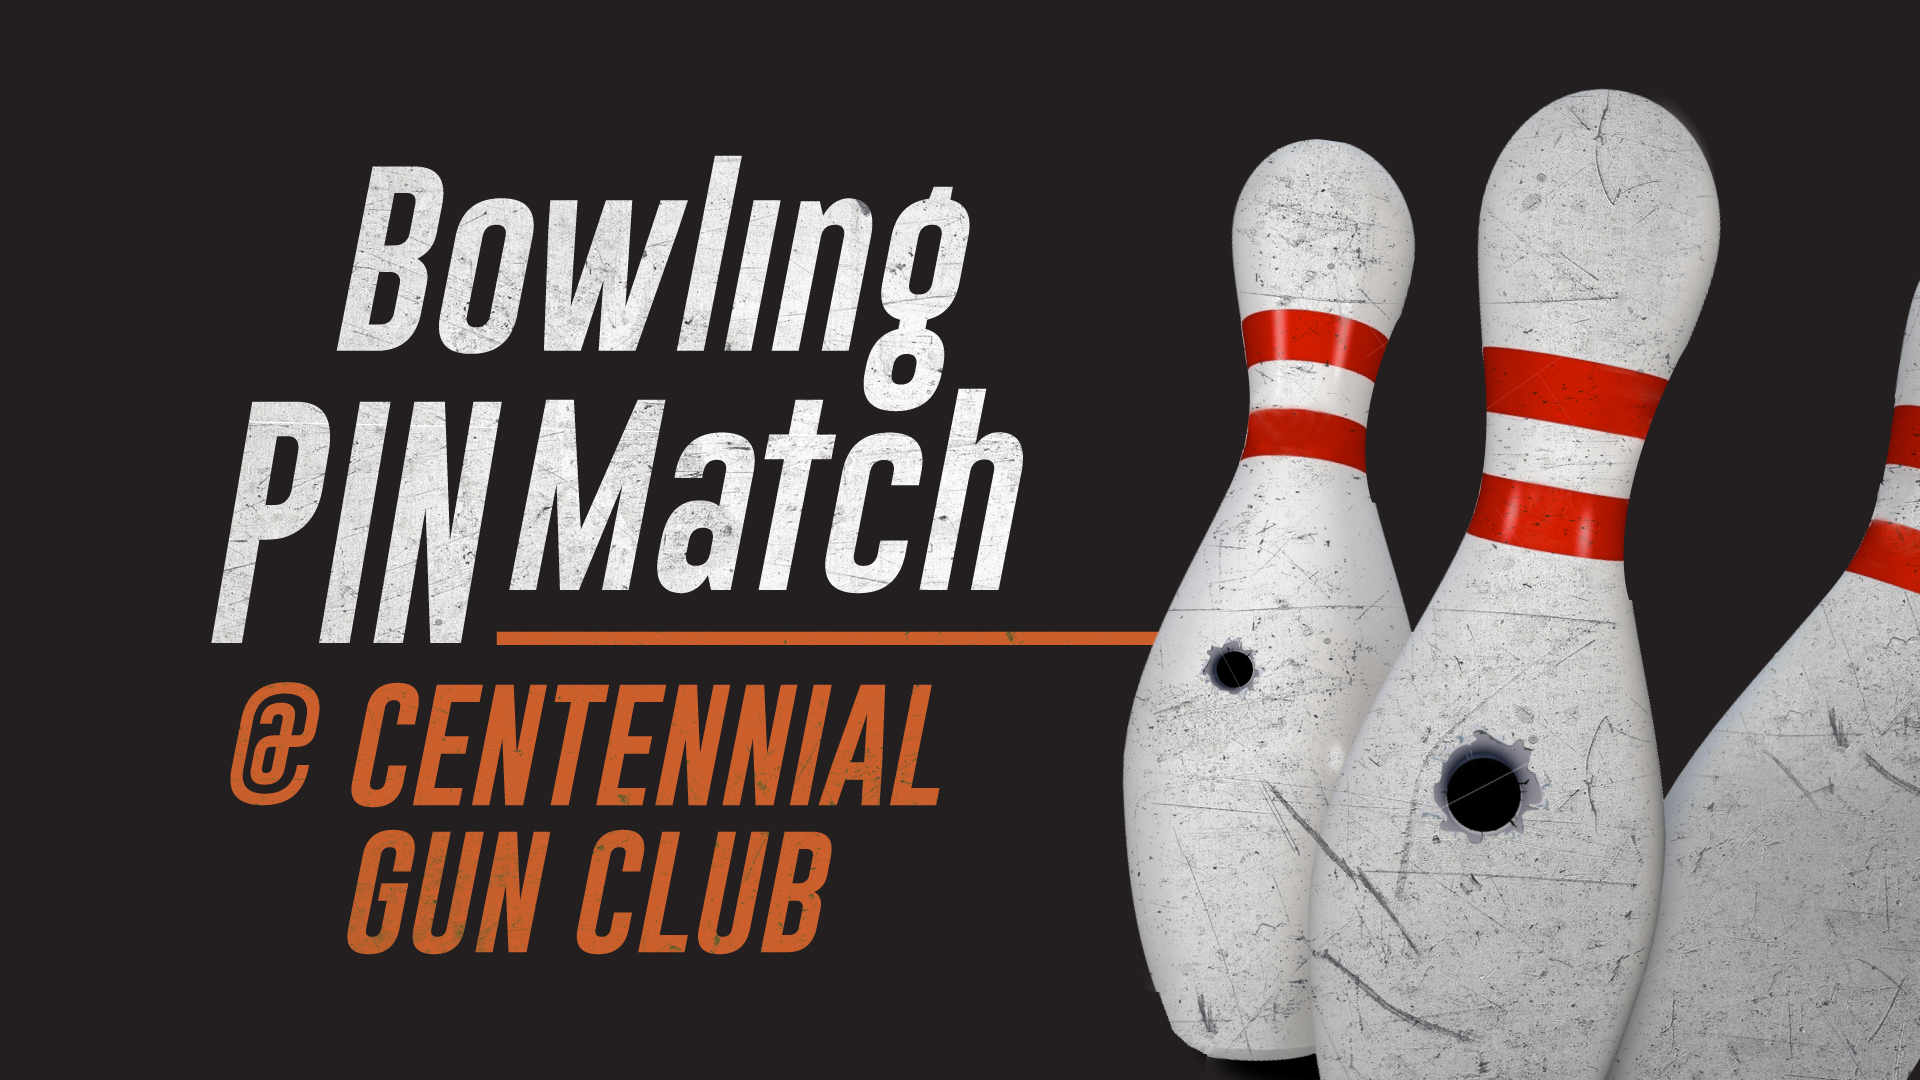 Bowling Pin Match at Centennial Gun Club event banner